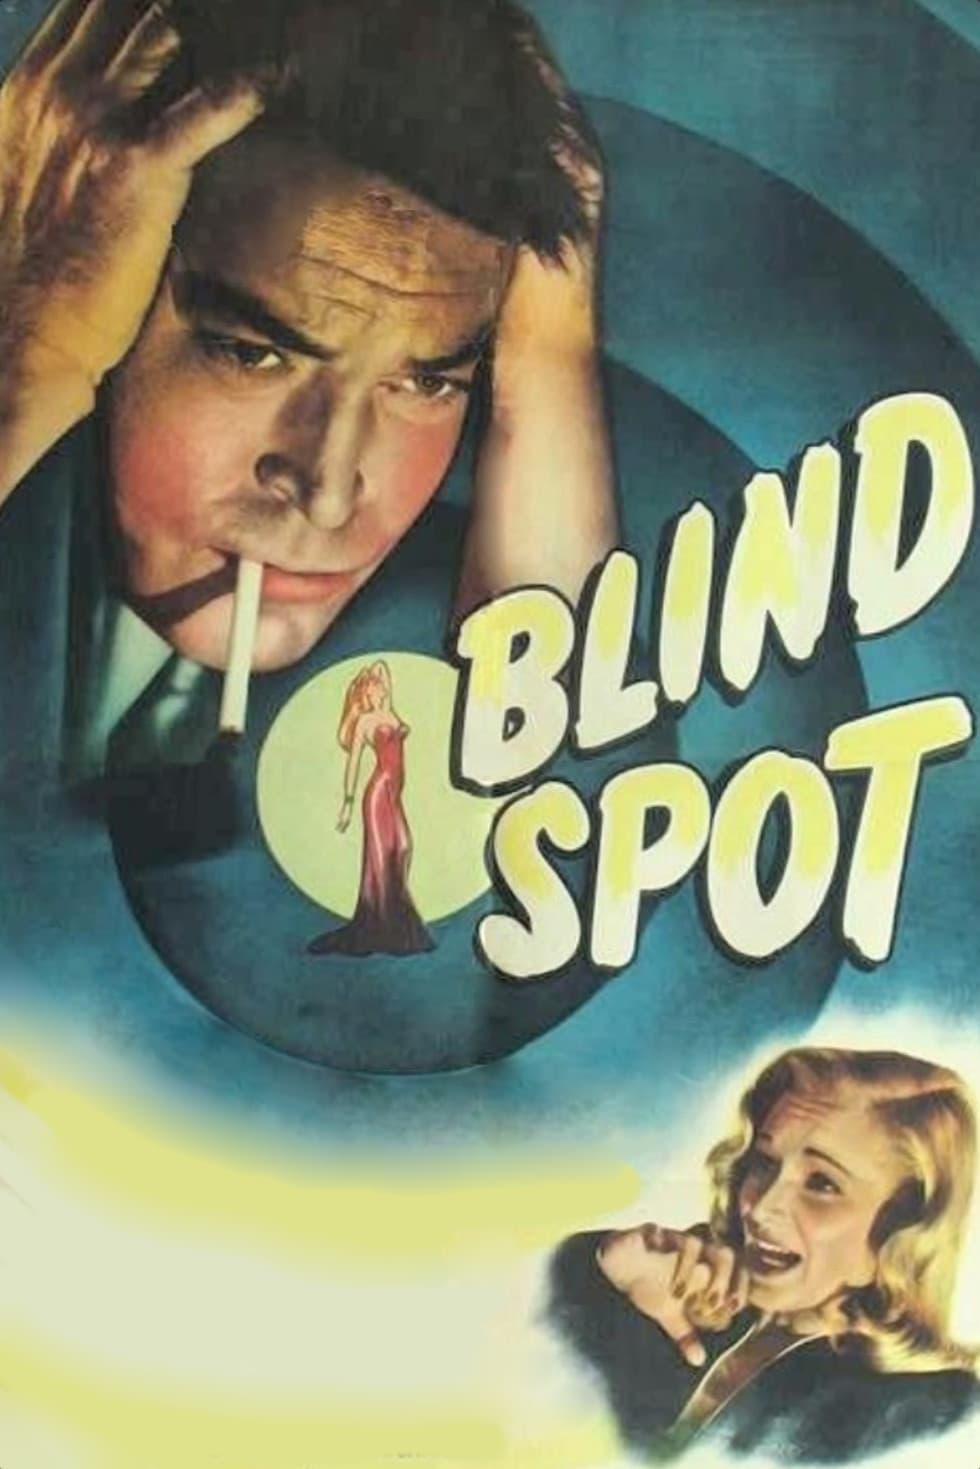 Blind Spot poster